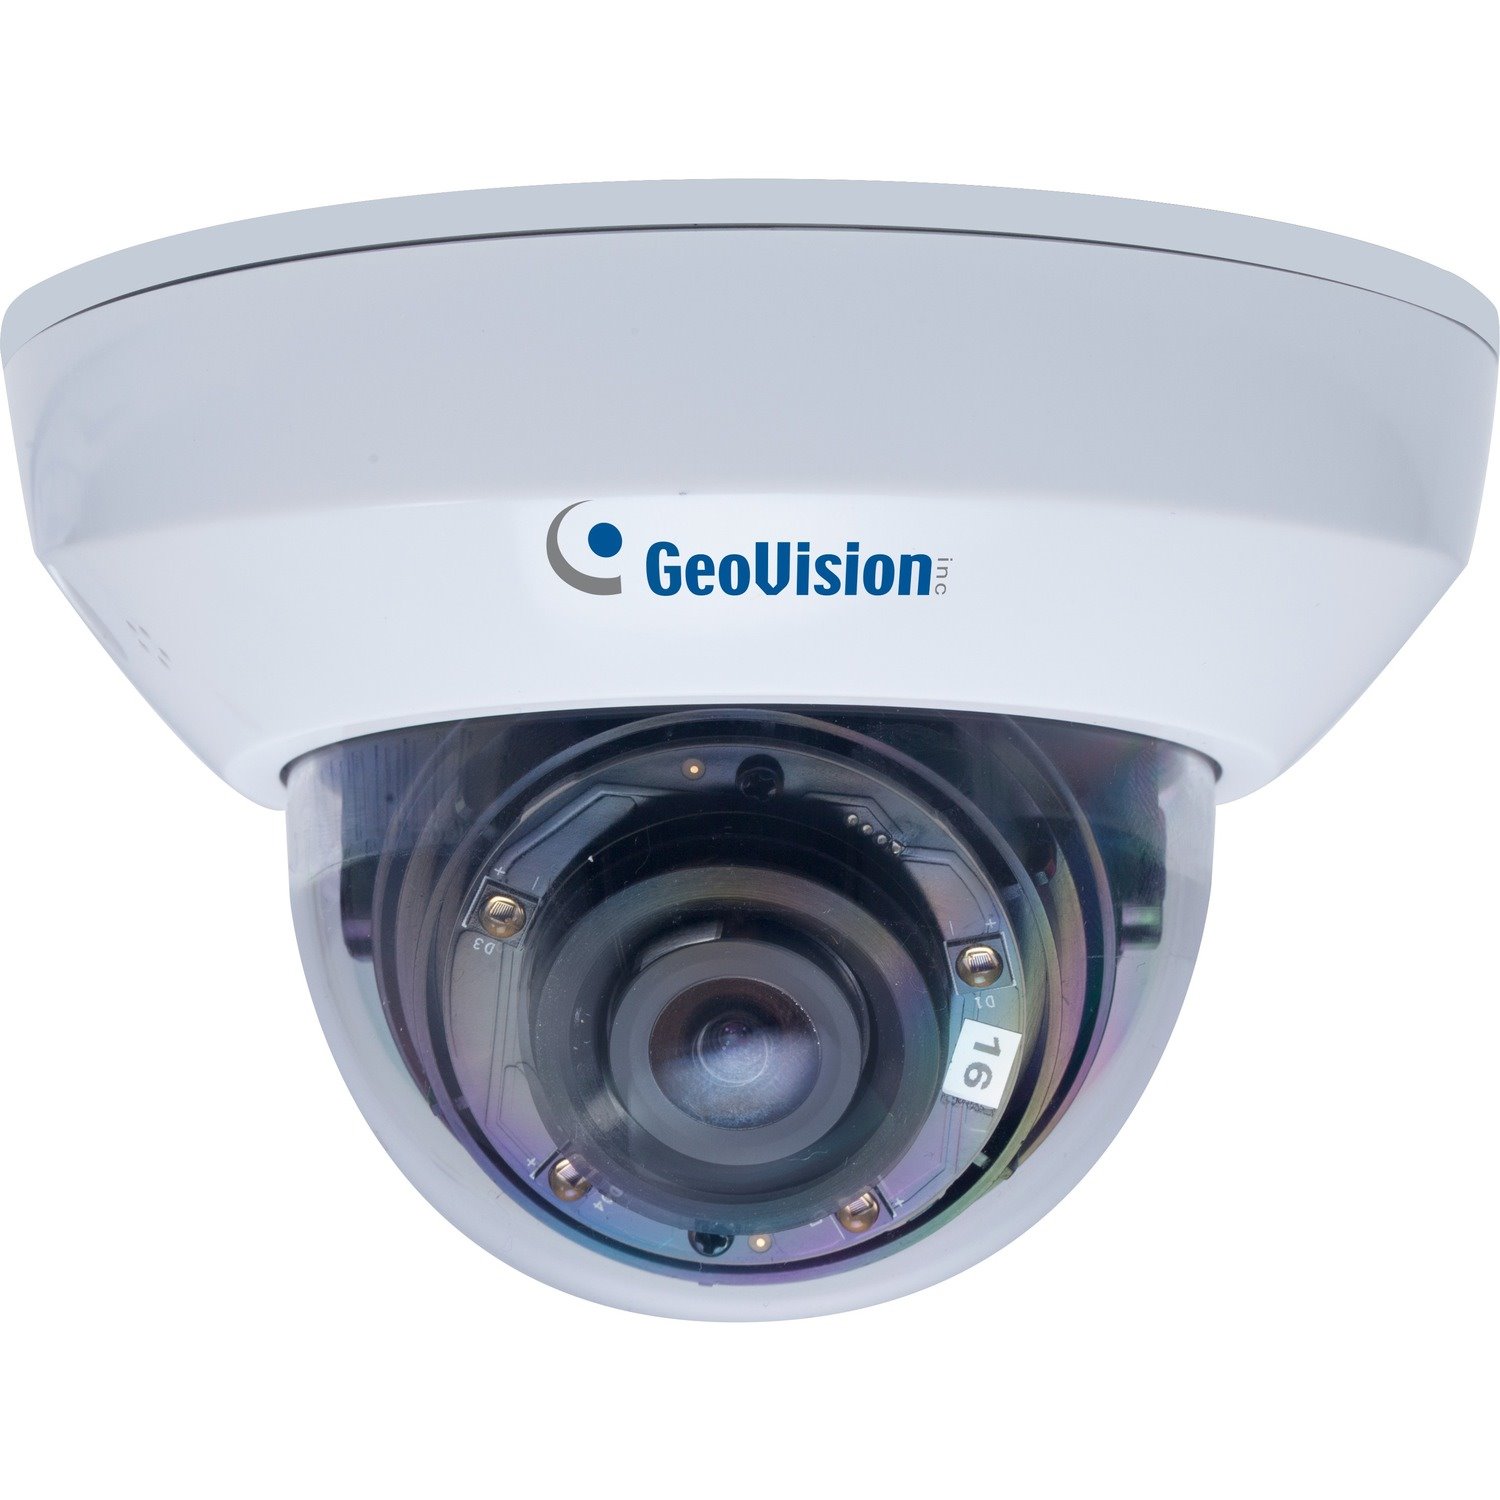 GeoVision GV-MFD2700-0F 2 Megapixel HD Network Camera - Color, Monochrome - Dome